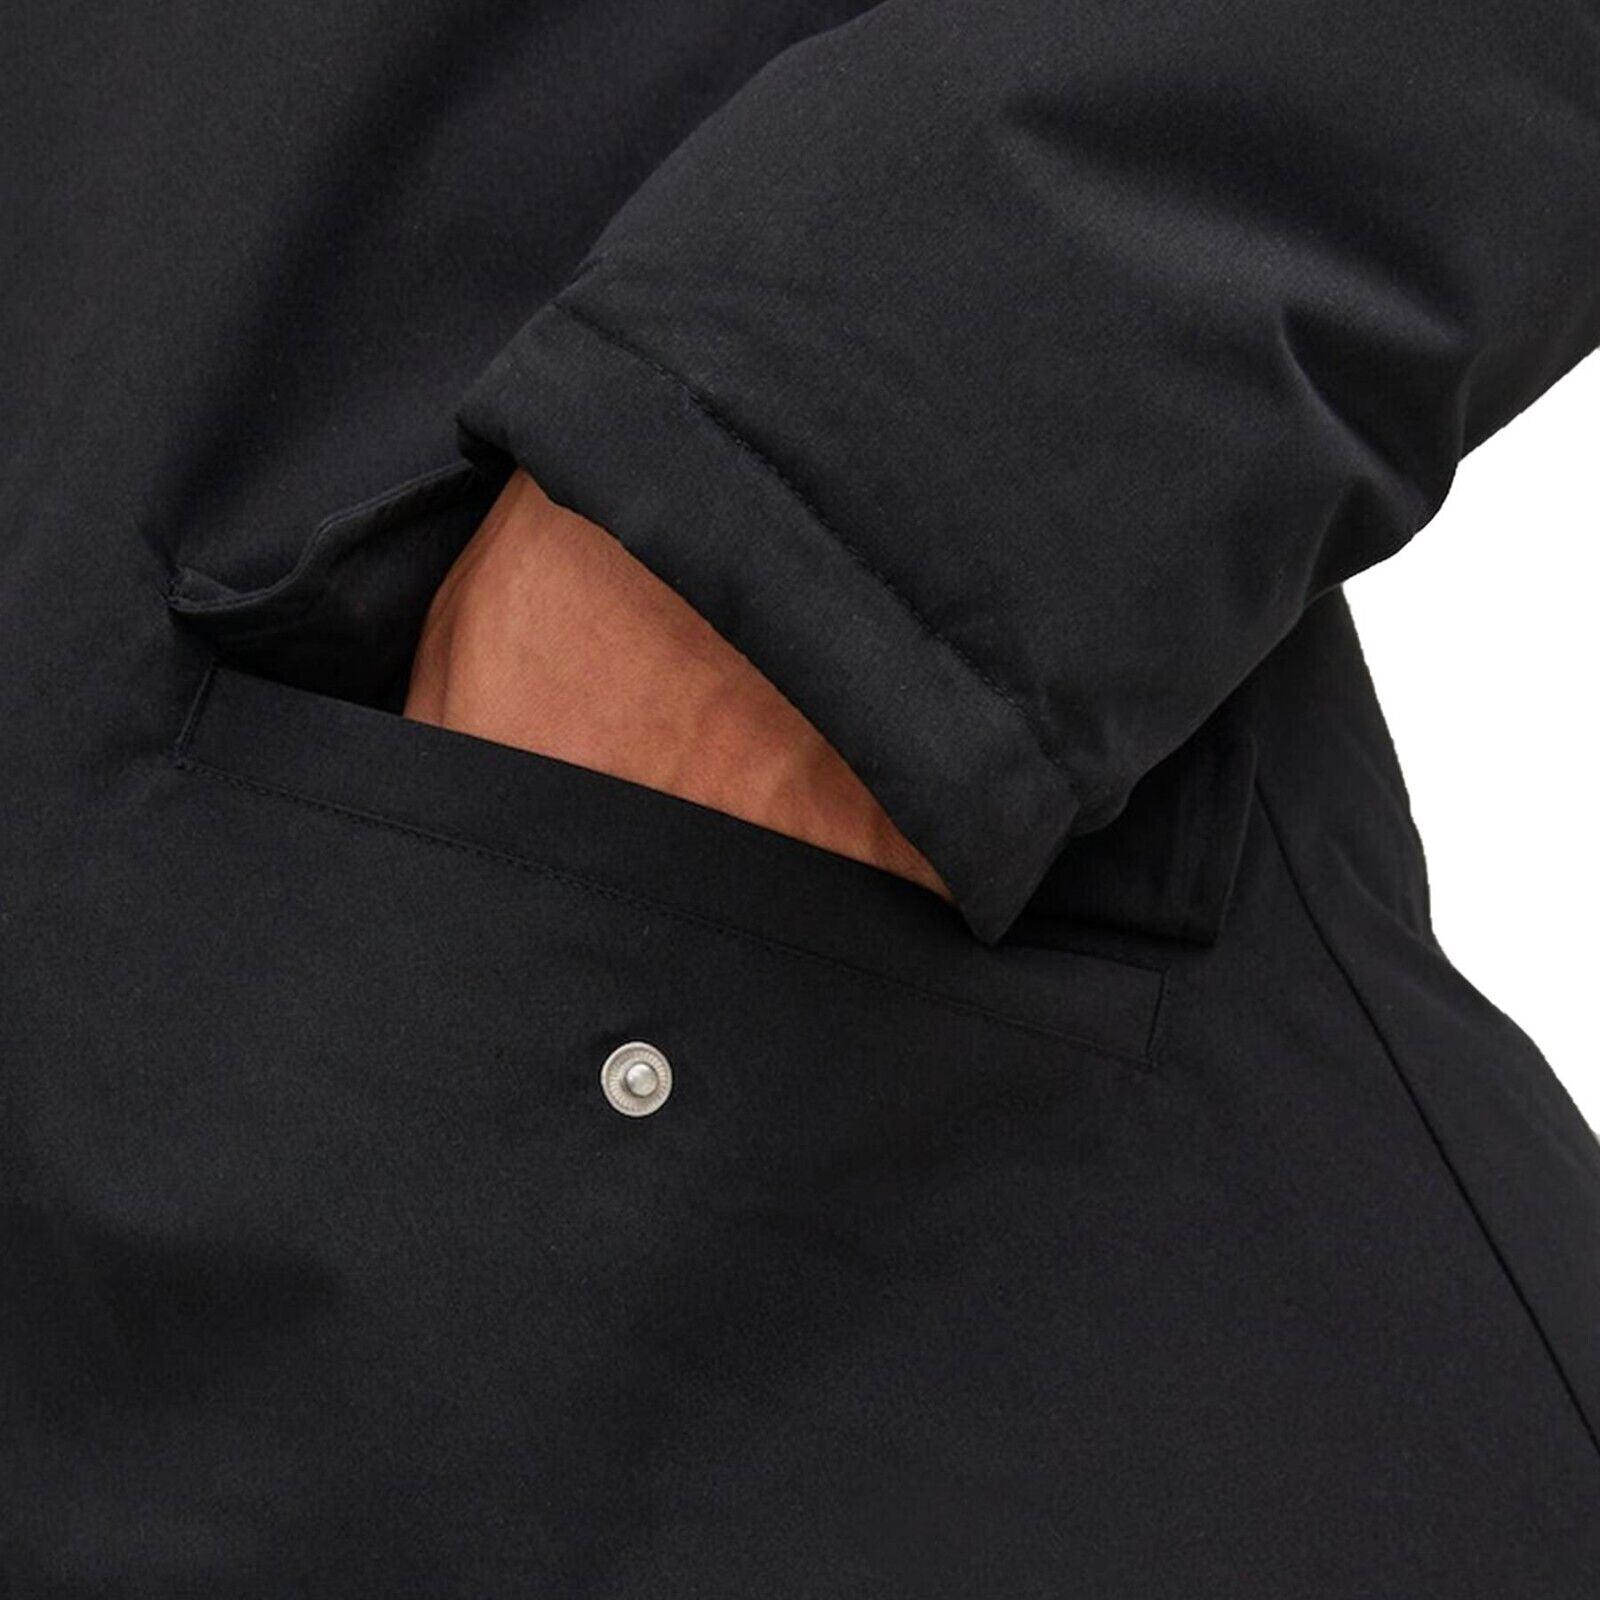 Jack & Jones Mens 'Loop' Parka Jacket in Black - VR2 Clothing